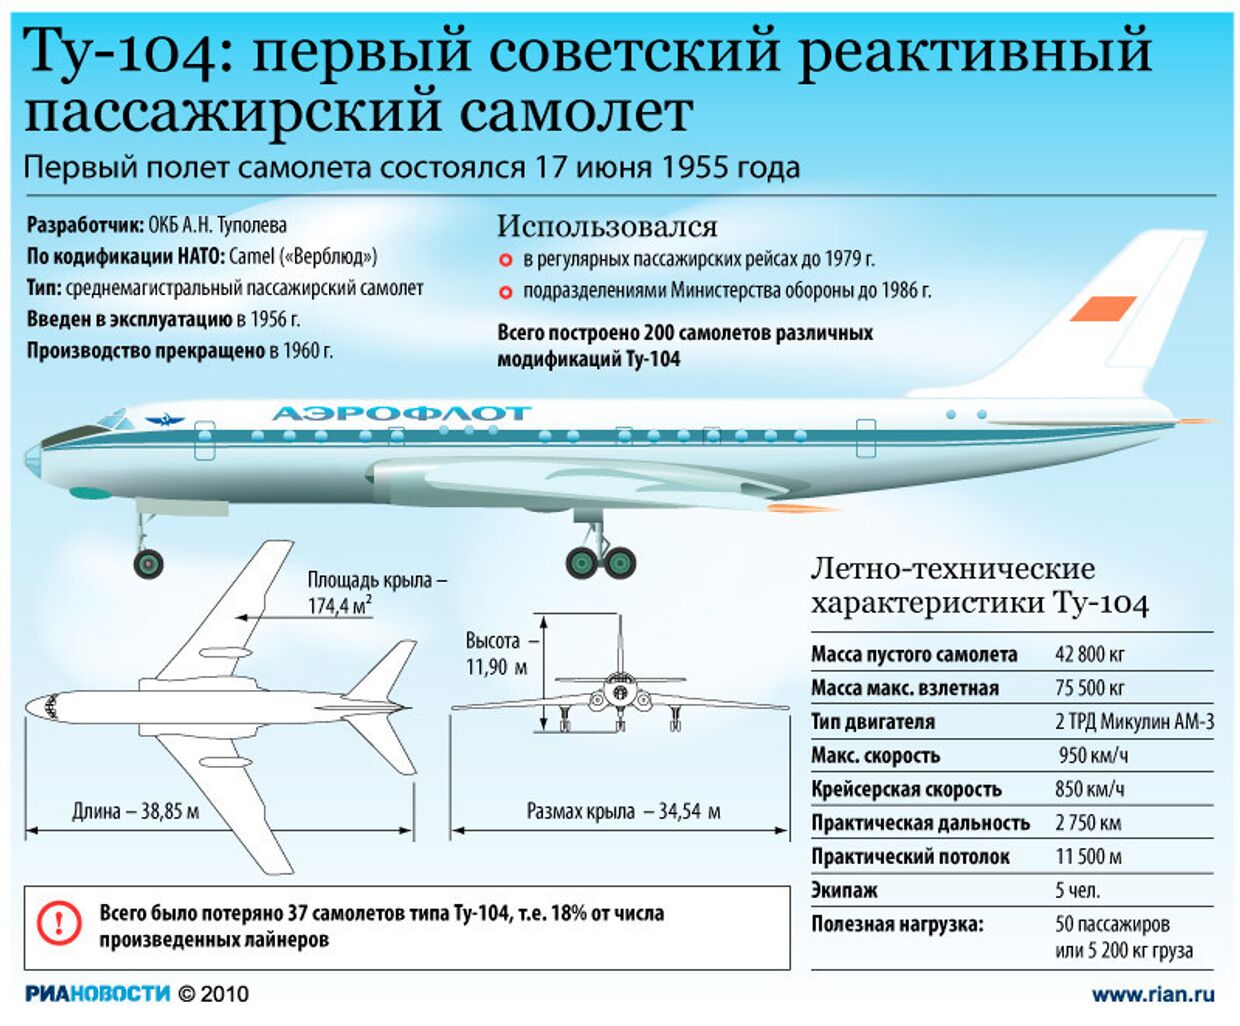 Ту-104: первый советский реактивный пассажирский самолет